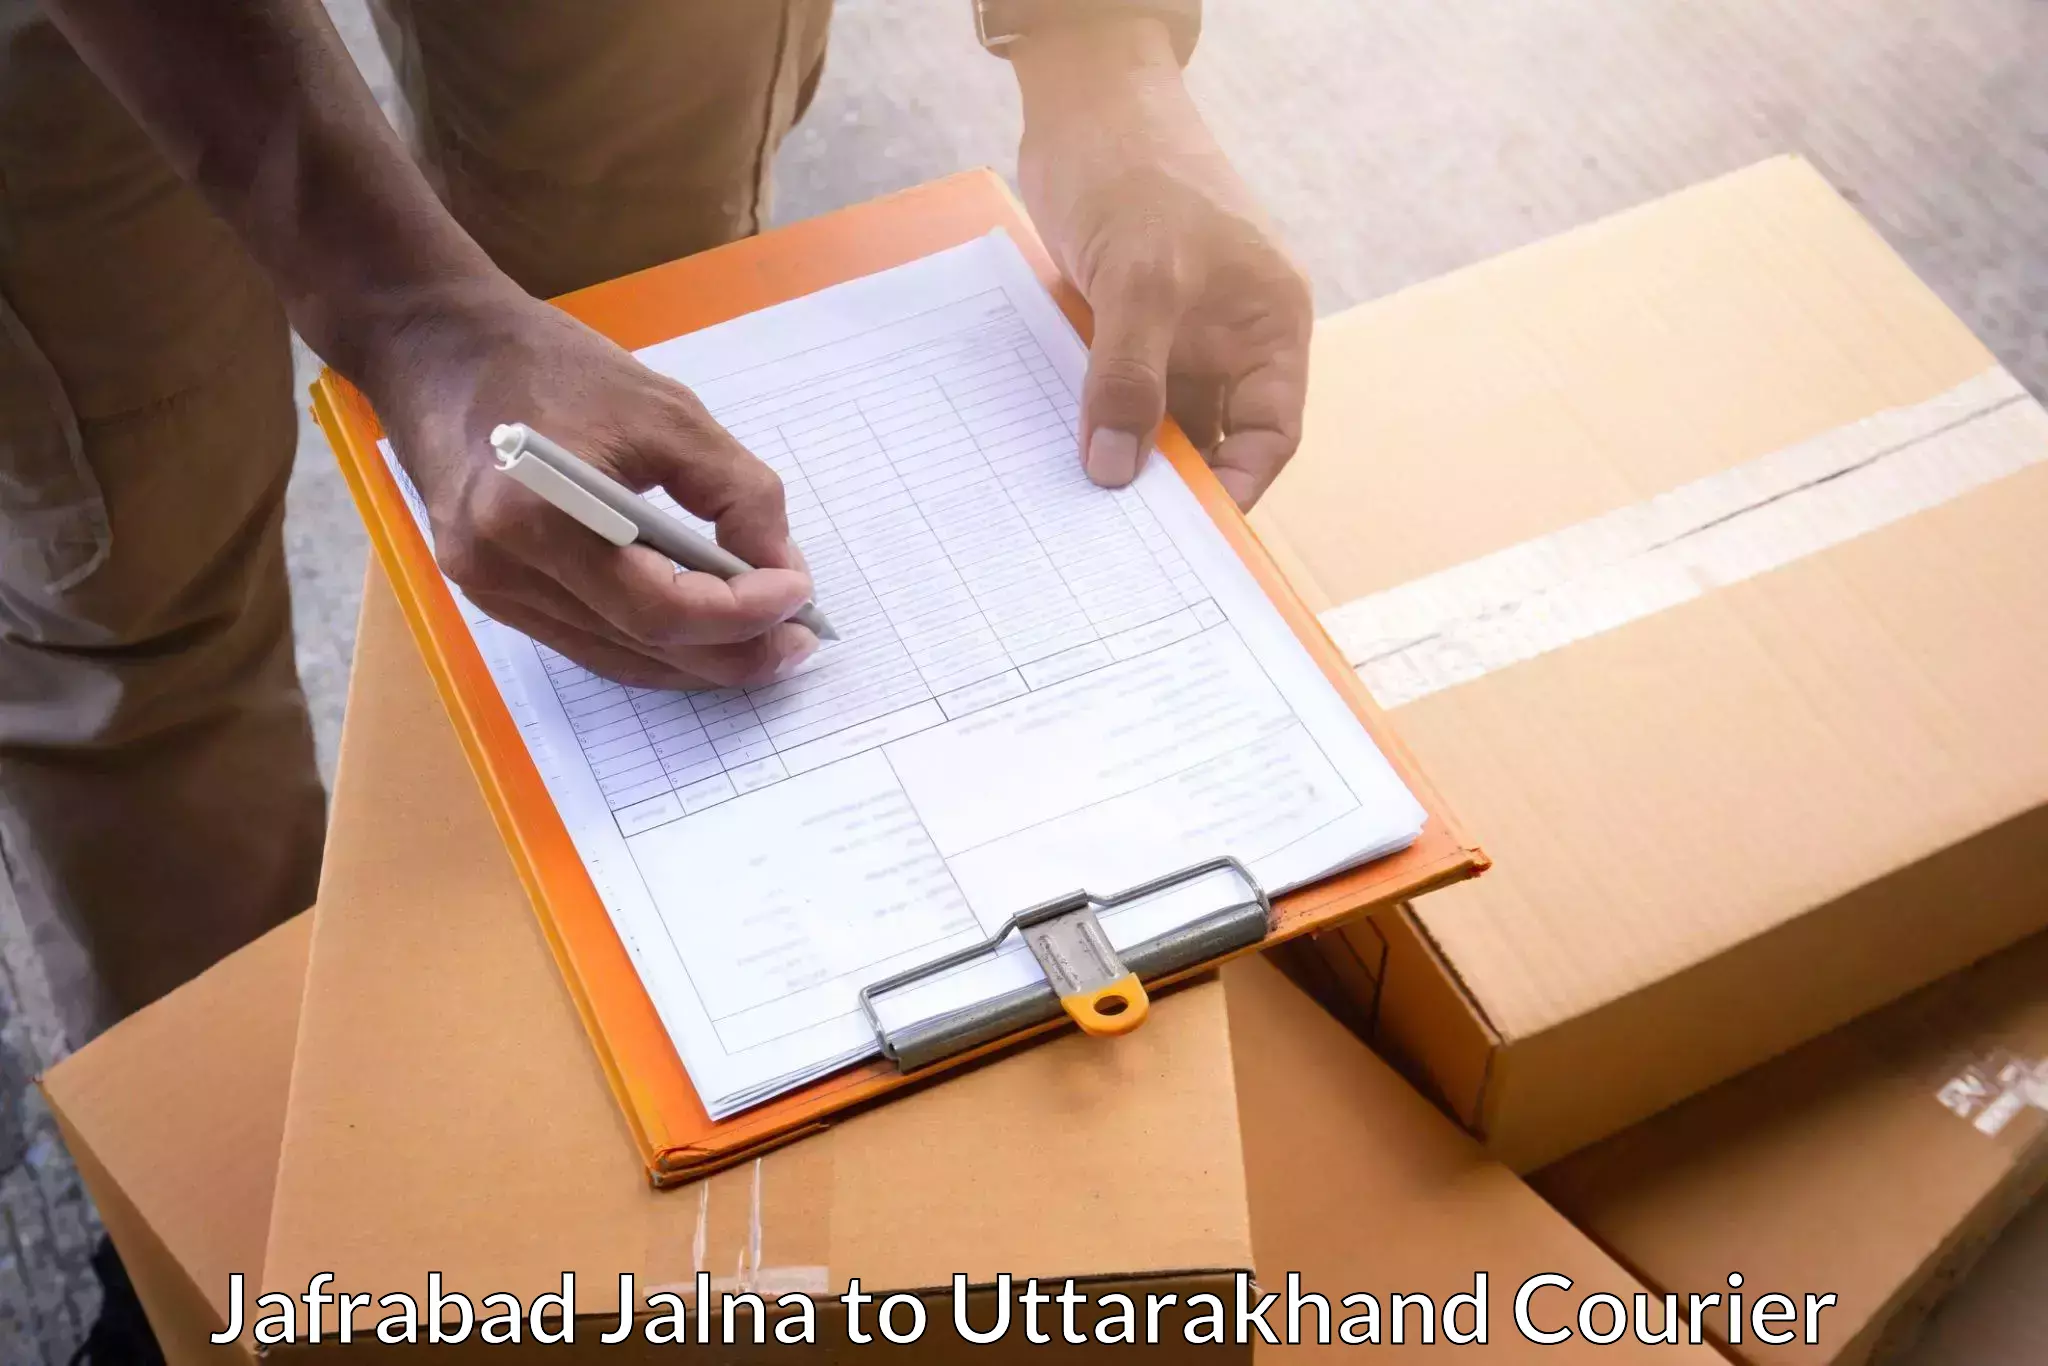 Affordable parcel service Jafrabad Jalna to Almora